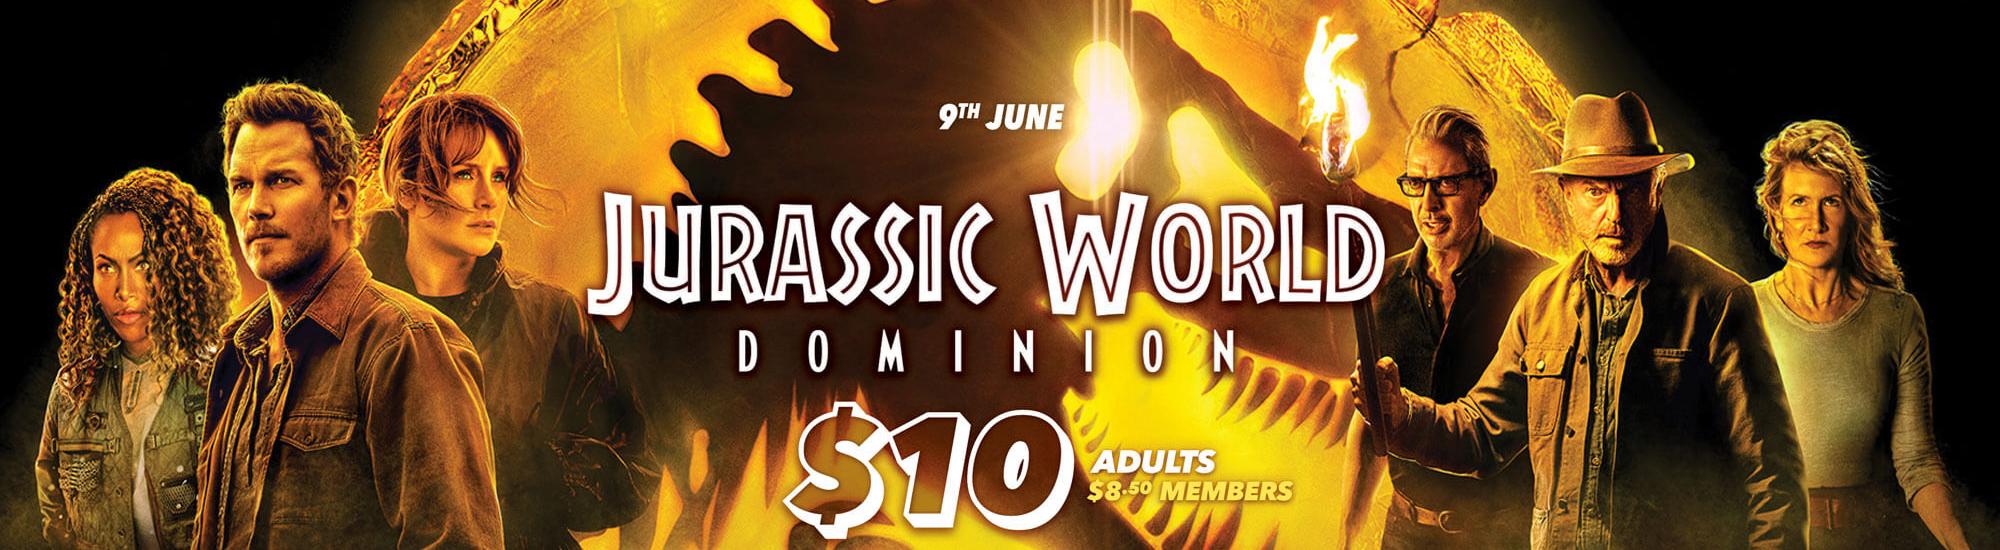 cinema hervey bay Jurassic World Dominion banner